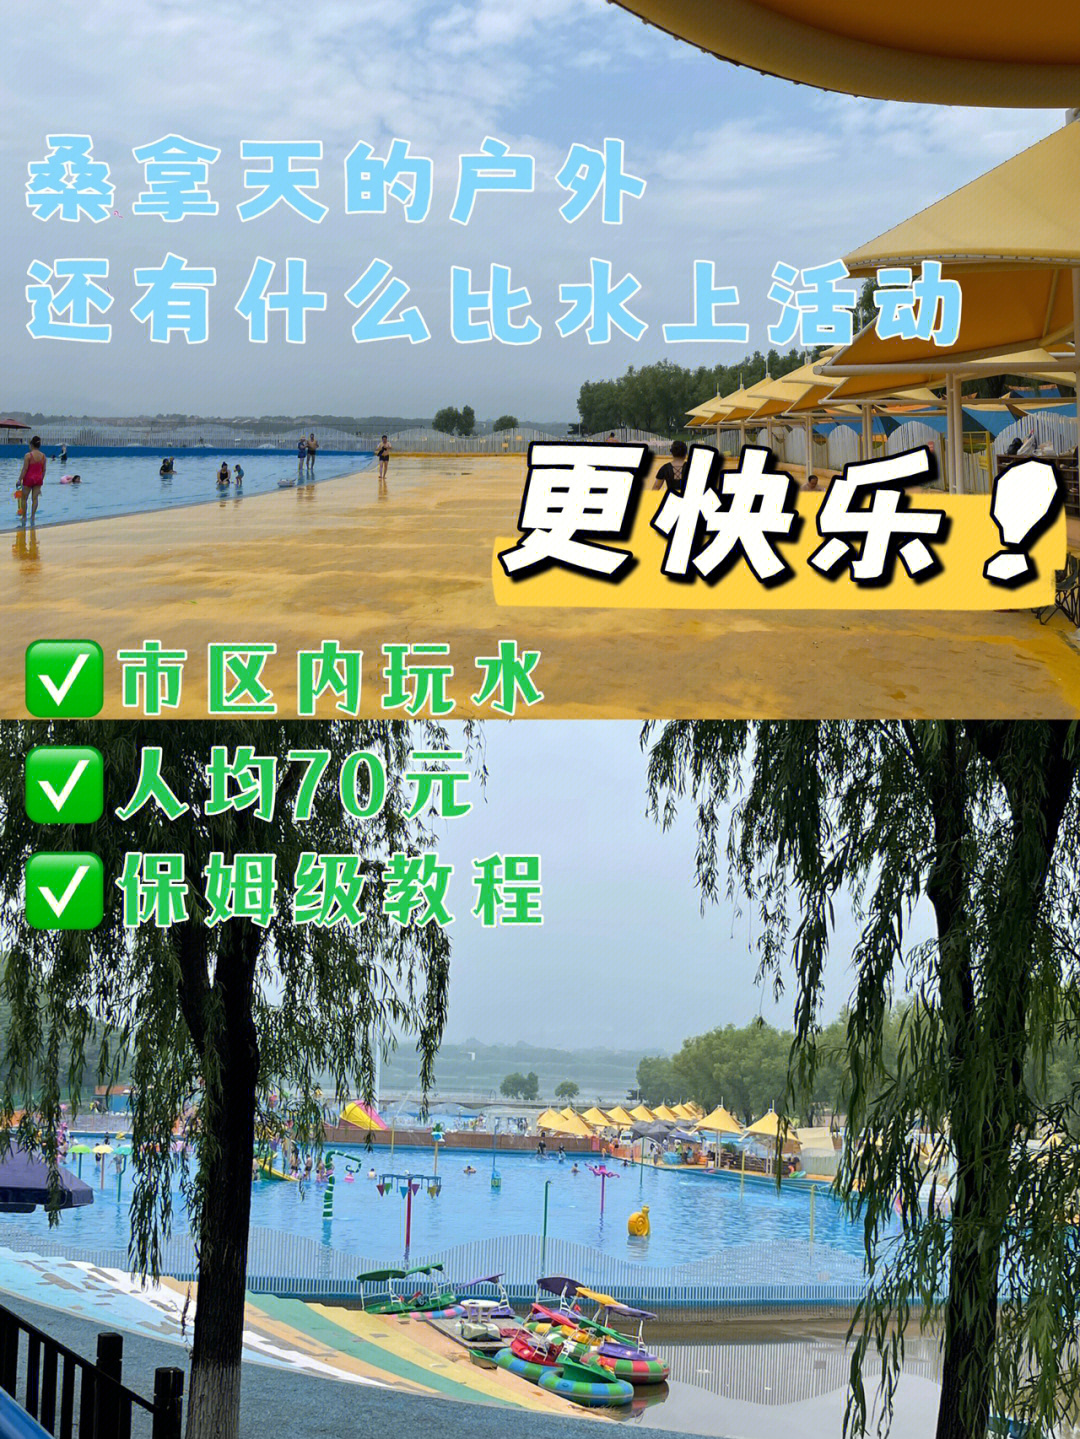 青龙湖水上乐园地址图片